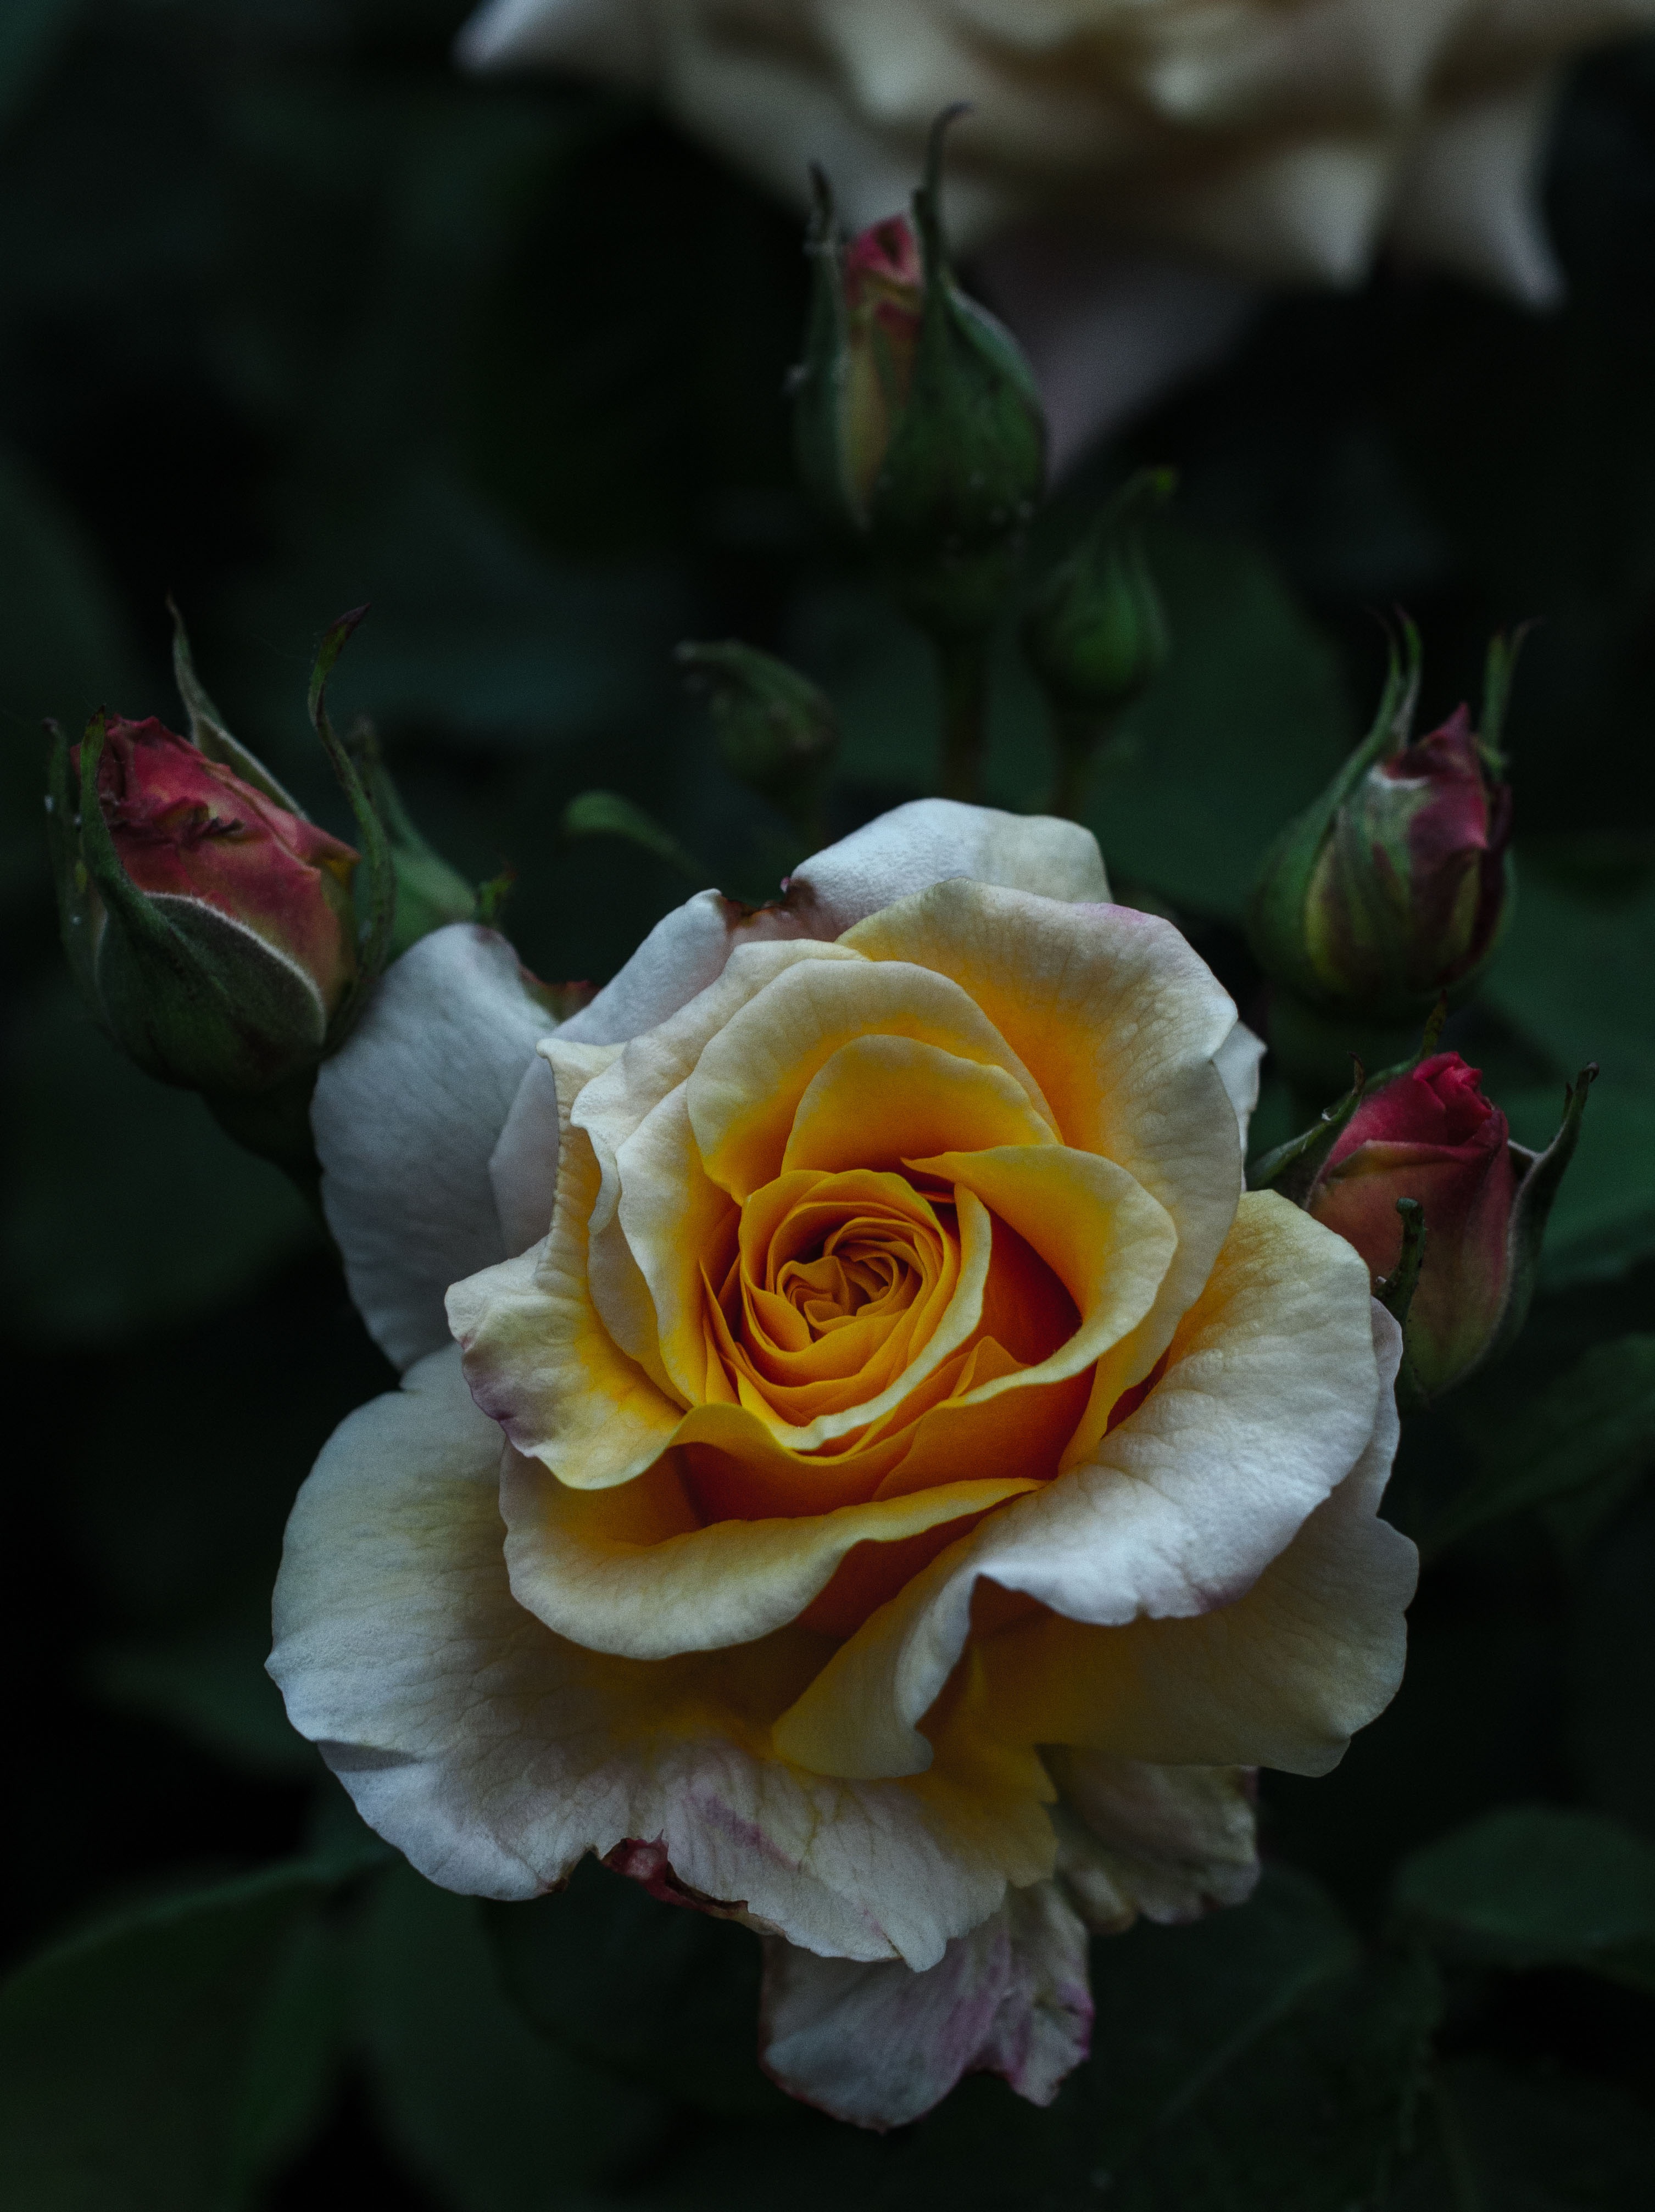 rose flower, flowers, bud, flower Hd 1080p Mobile